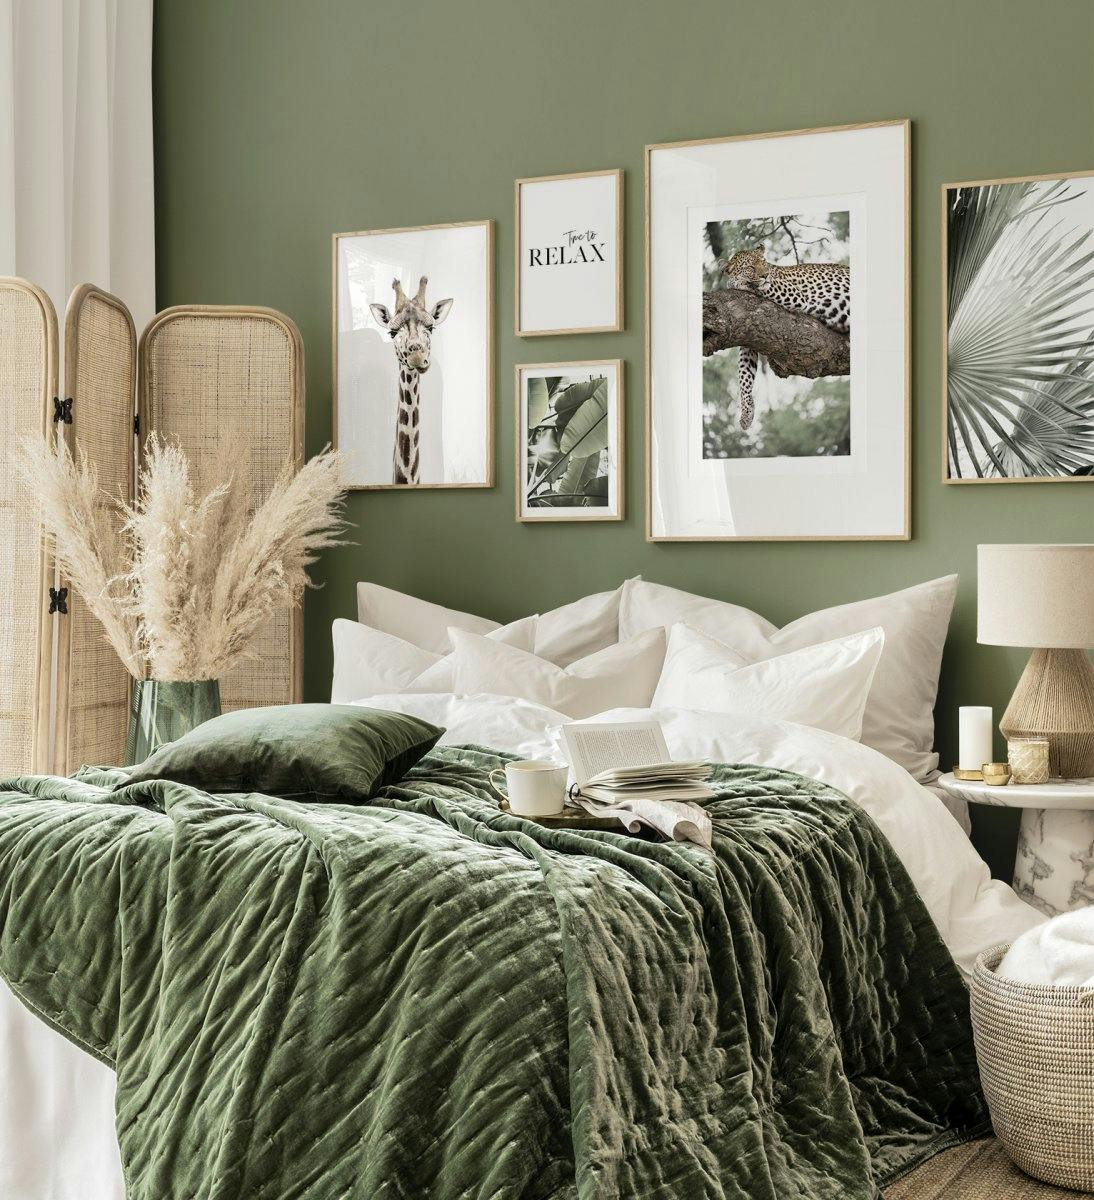 Parete di galleria di paesaggi verdi e natura con cornici in rovere per il soggiorno